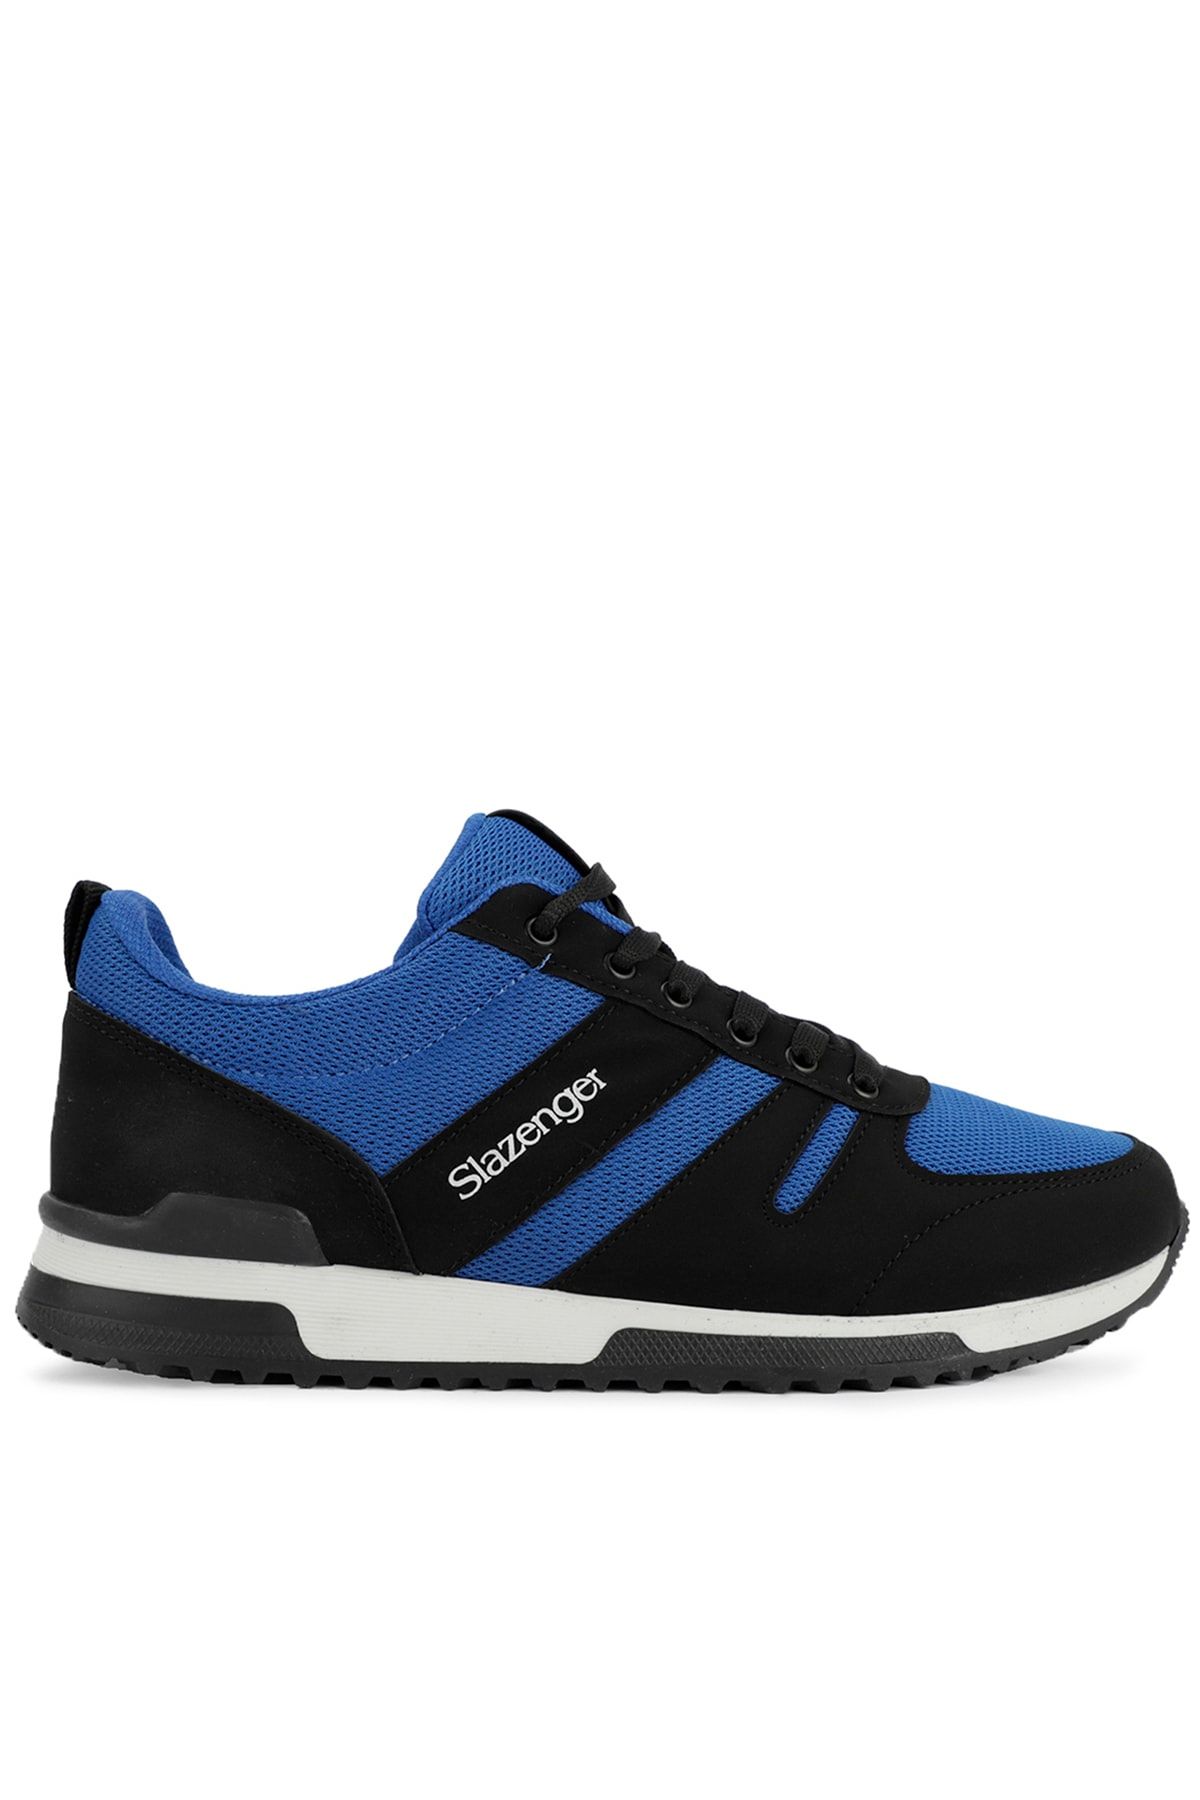 Slazenger Edwın Sneaker Erkek Ayakkabı Siyah / Saks Mavi Sa11le079